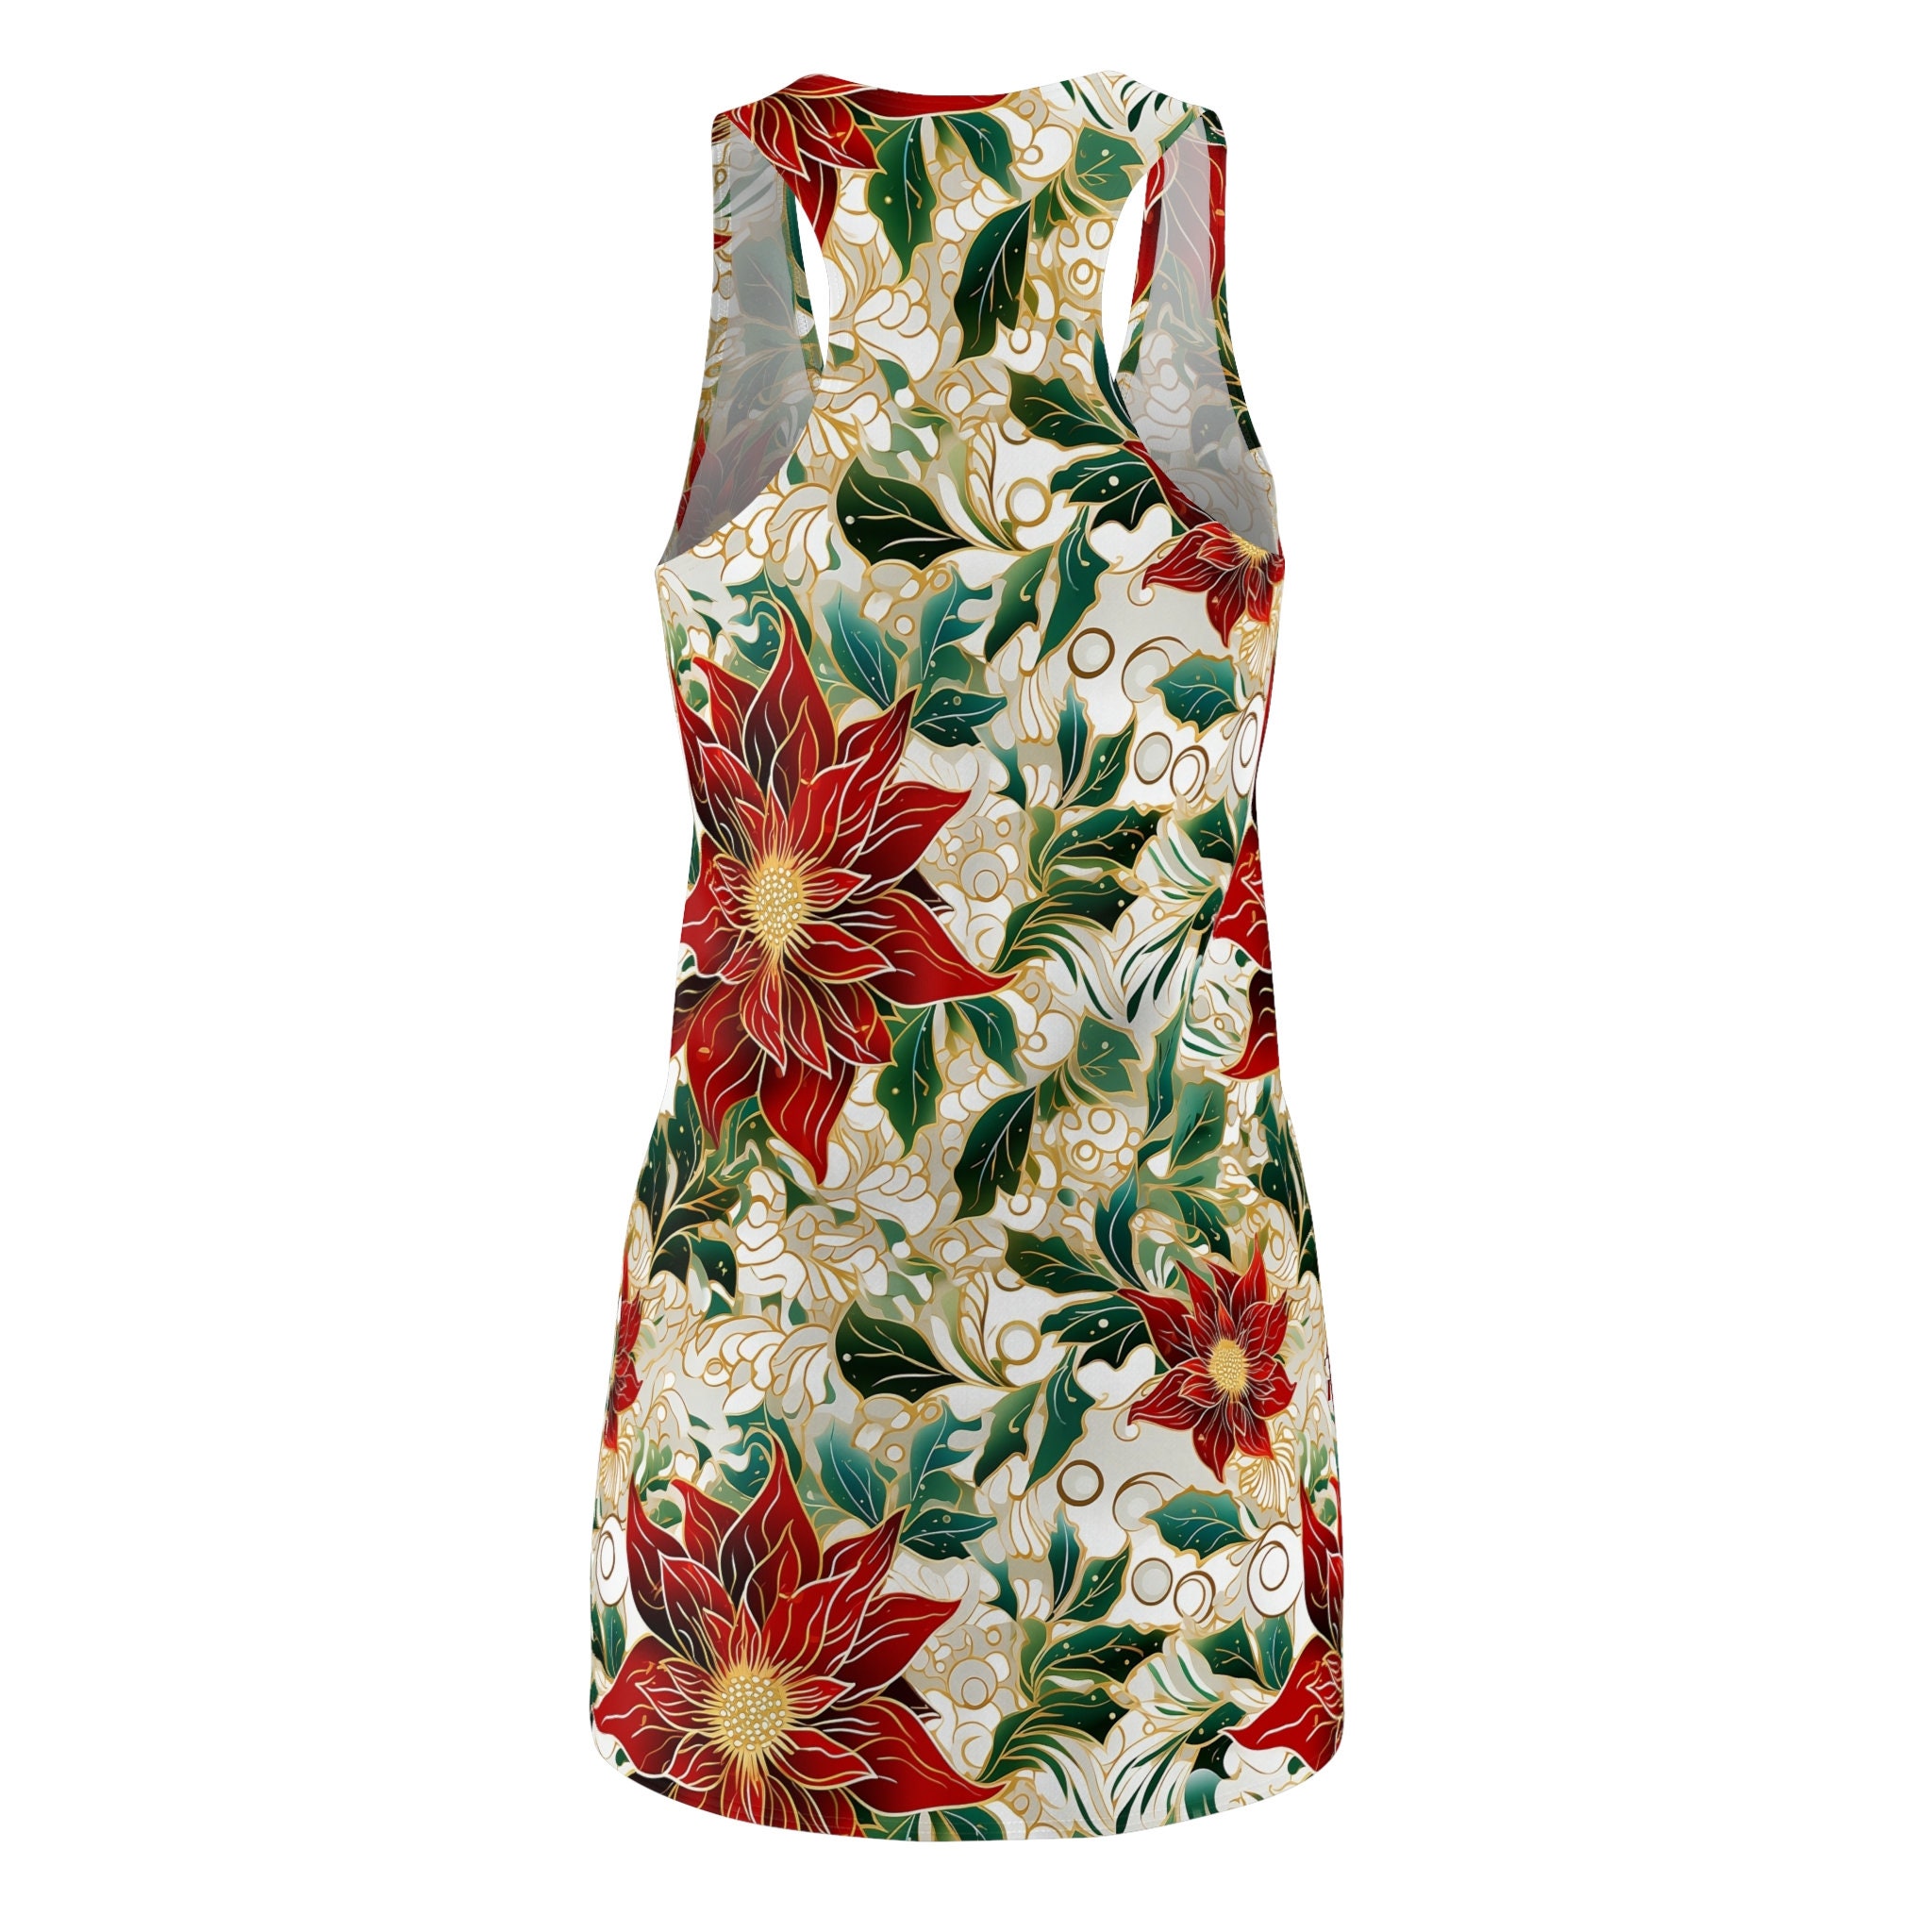 Red Flower Women's Cut & Sew Racerback Dress